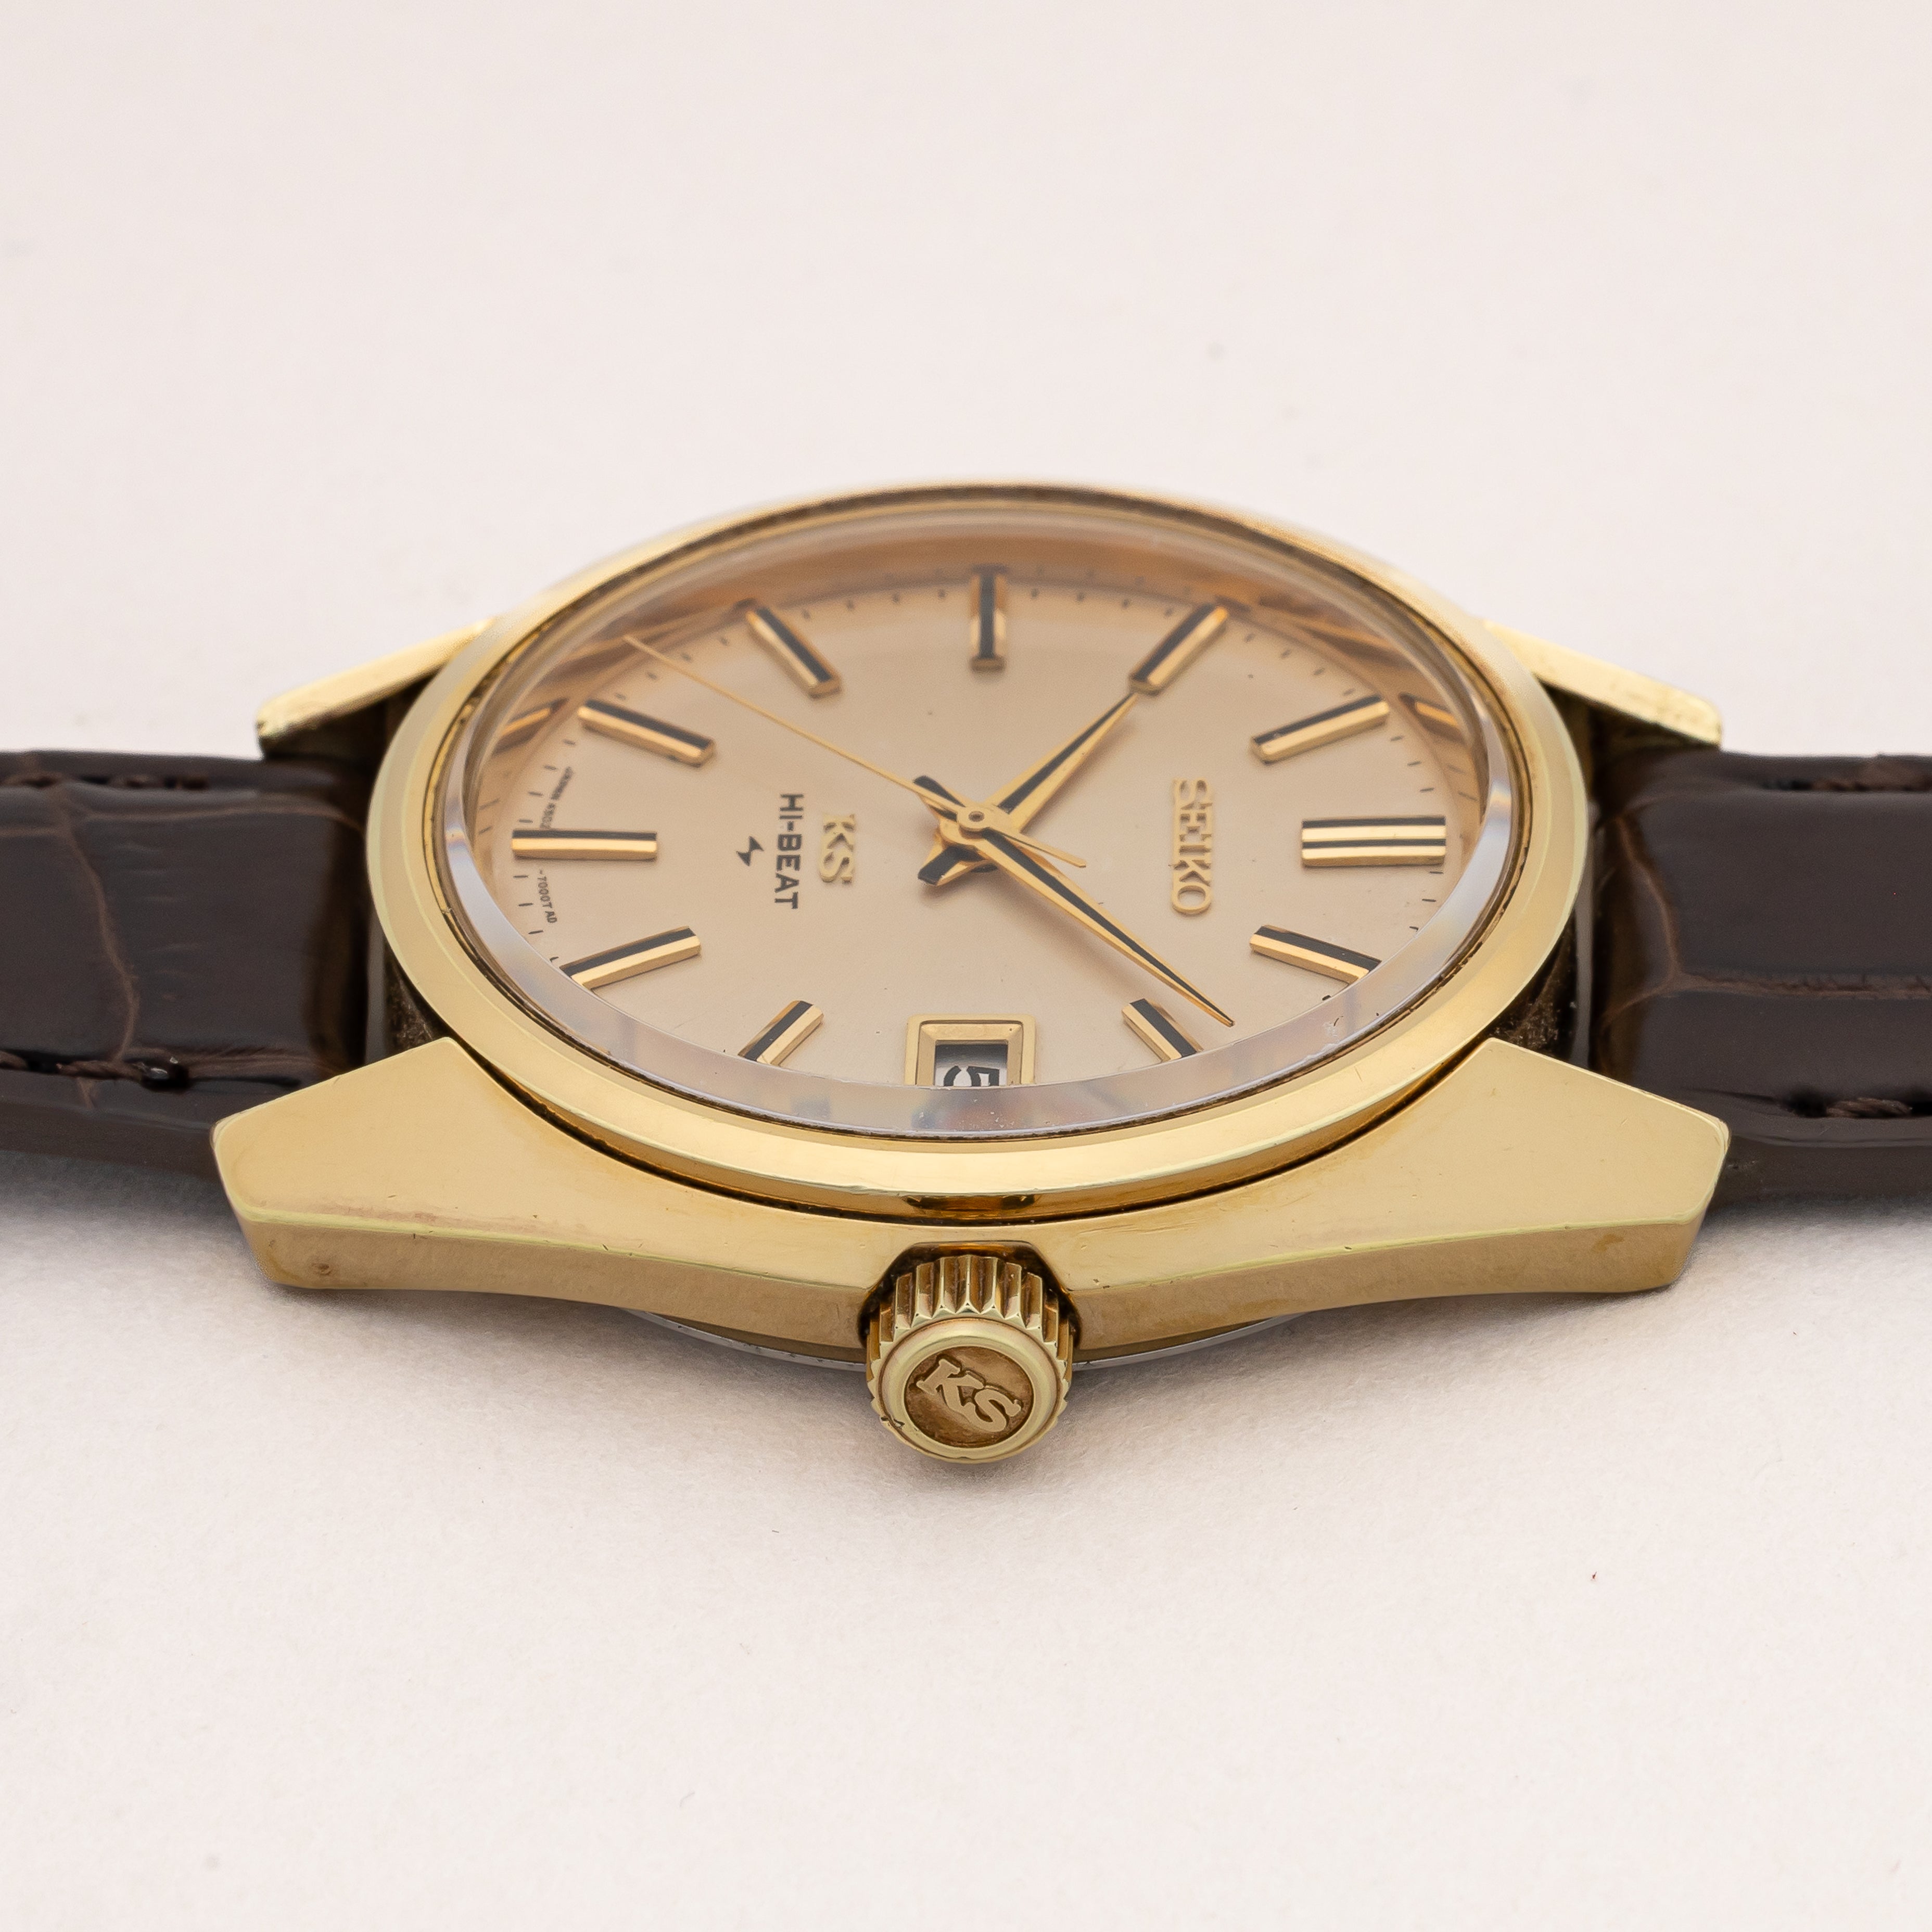 SEIKO SEIKO キングセイコー 45KS 1969年製 手巻き メンズ 腕時計 CAP GOLD クッションケース 社外ベルト 4502-8000【いおき質店】